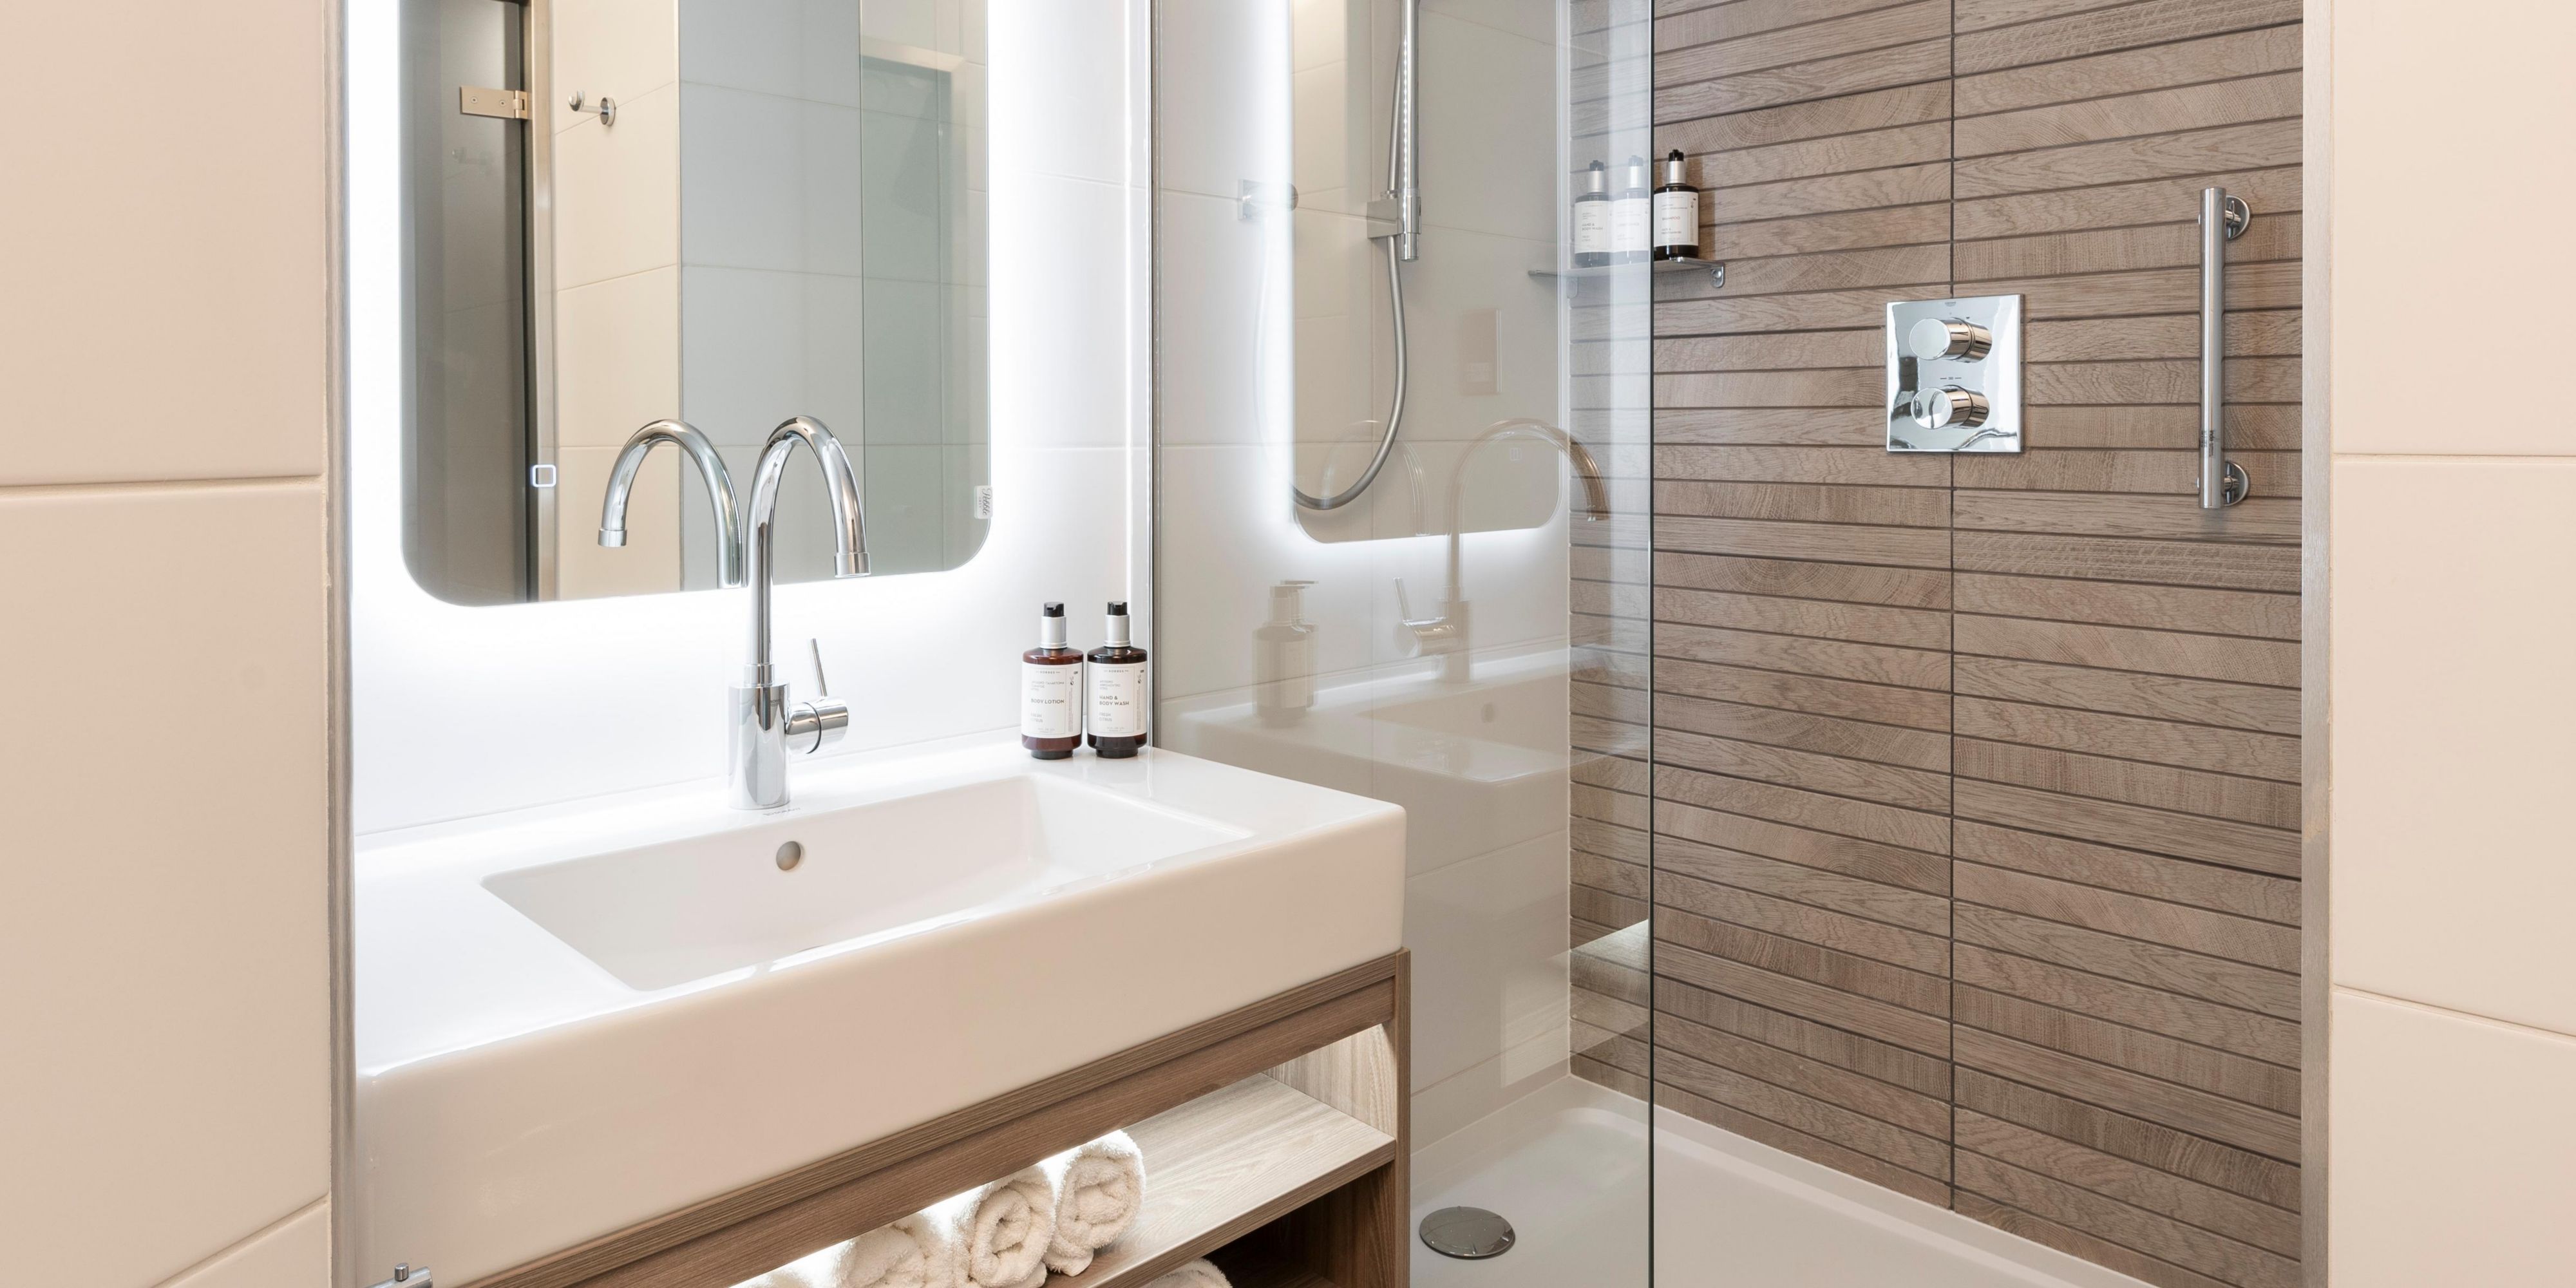 voco Edinburgh-Haymarket bathrooms with aerated shower